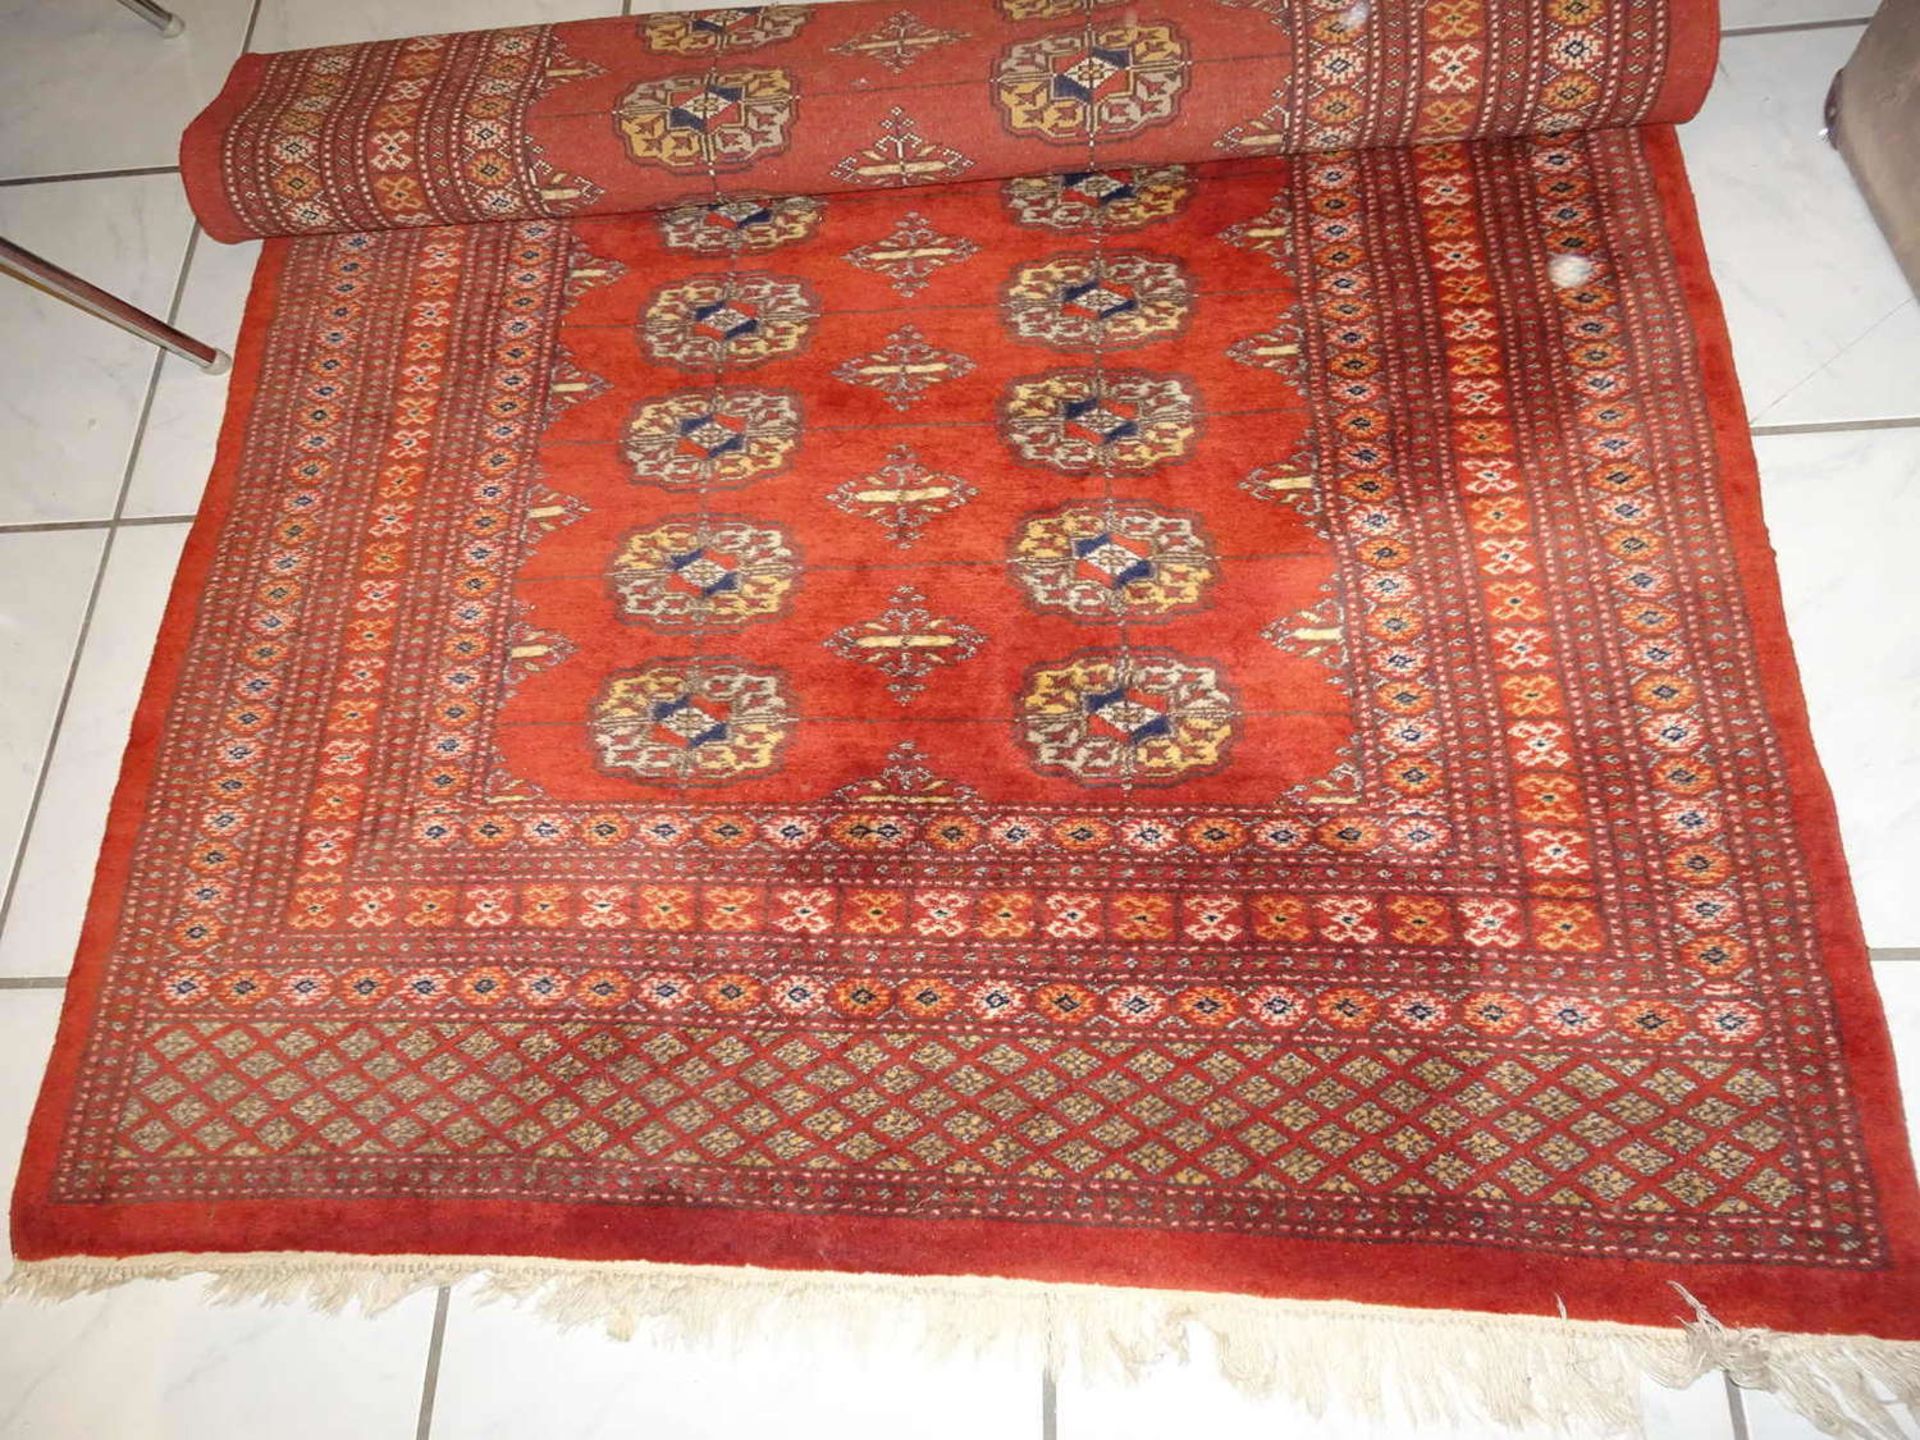 wertvoller Teppich aus Iran, Länge ca. 2 m, Breite ca. 1,20 m. Bitte besichtigen! valuable carpet